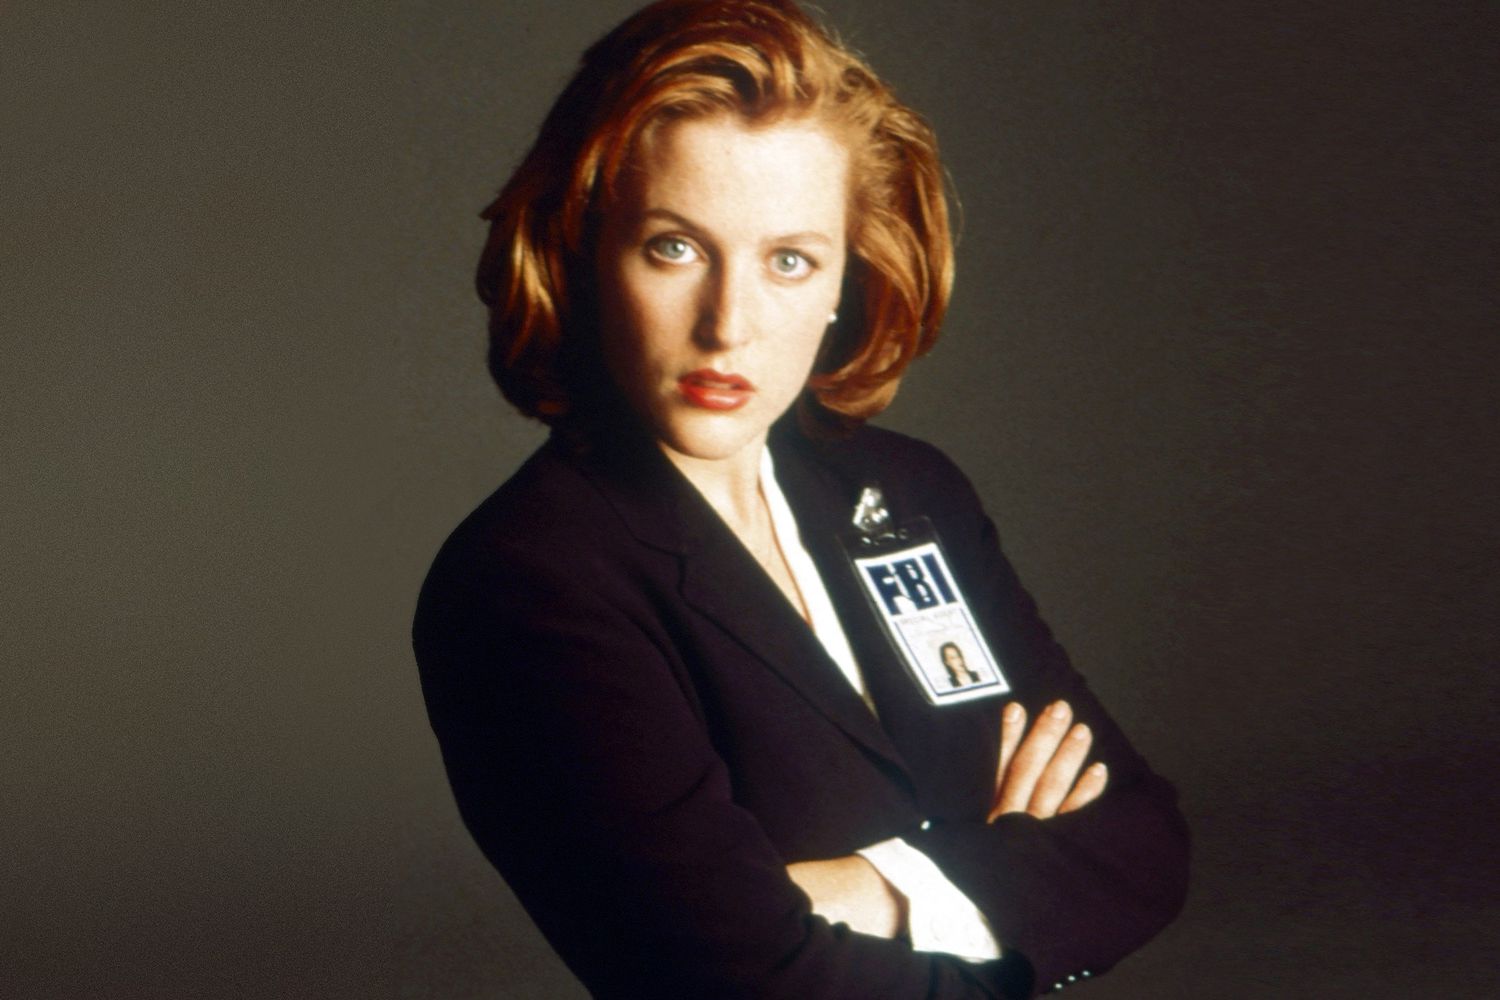 Gillian Anderson portrait in The X-Files